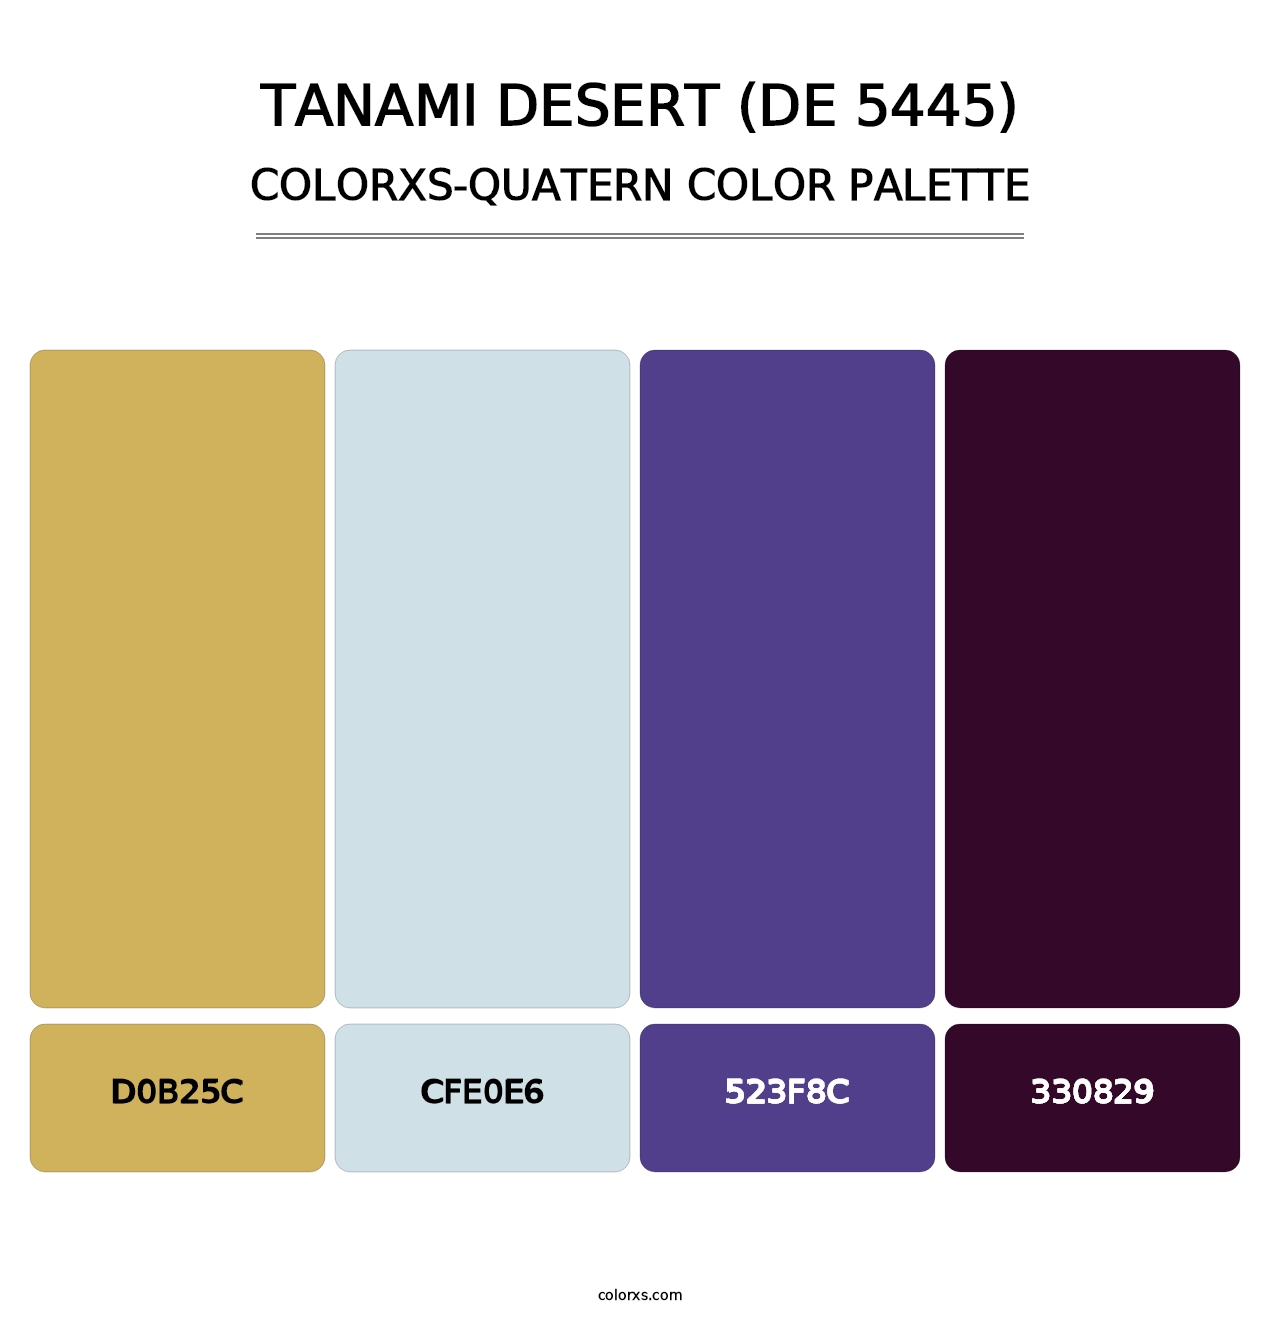 Tanami Desert (DE 5445) - Colorxs Quatern Palette